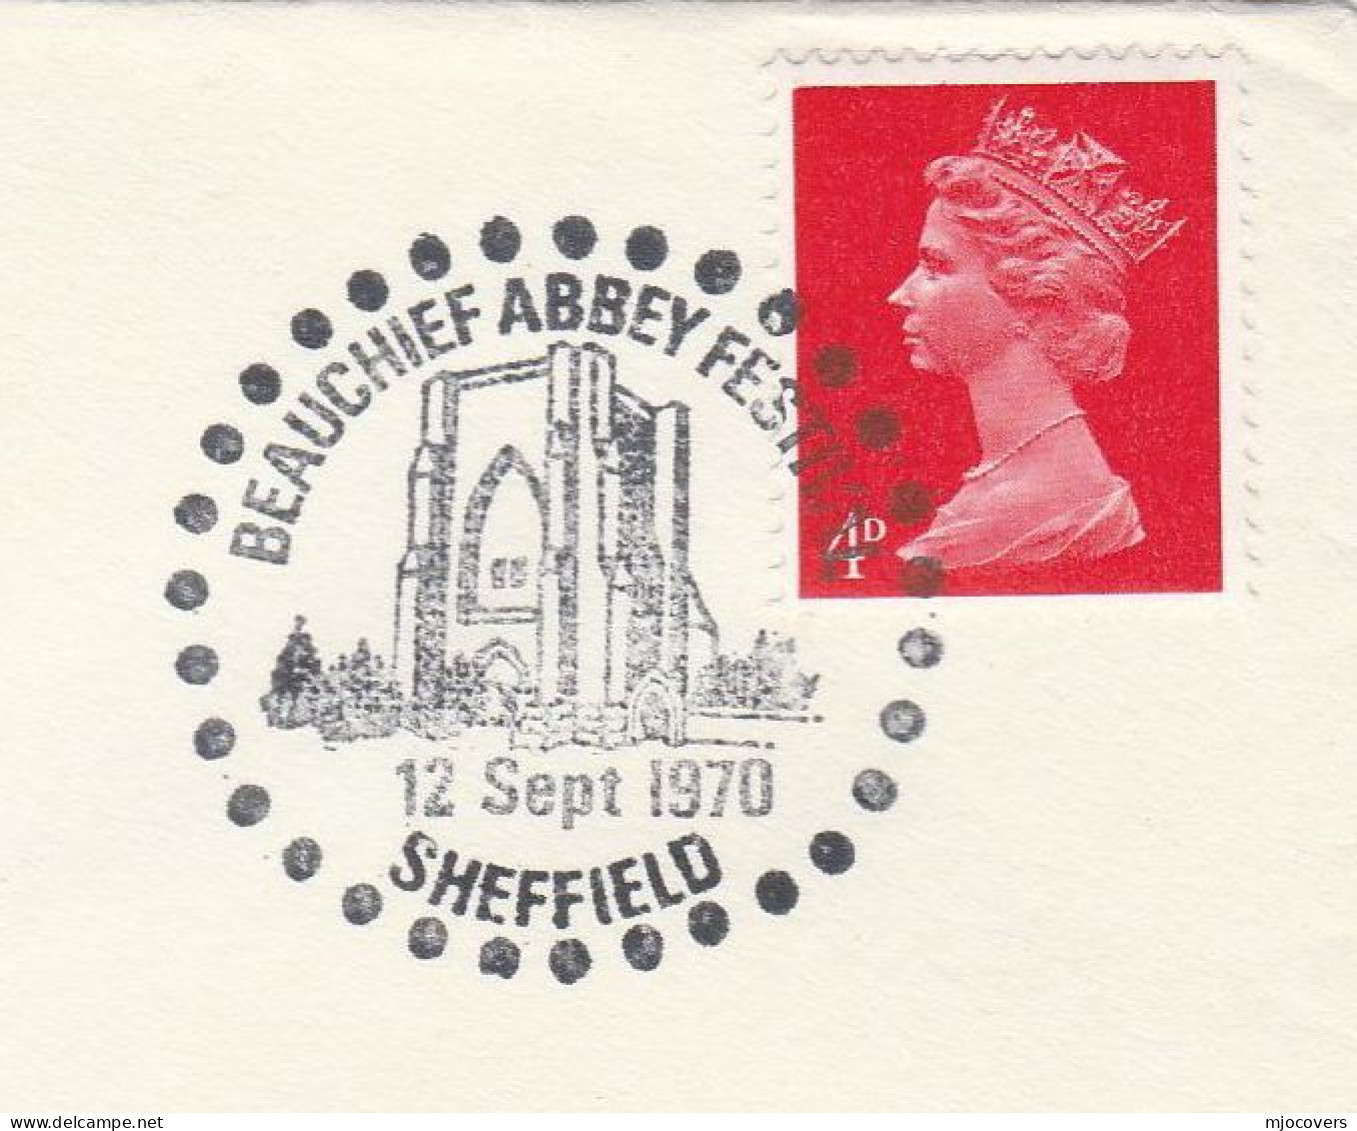 1970 Beauchief ABBEY Festival Sheffield Event Cover Gb Stamps Religion Church - Abbazie E Monasteri